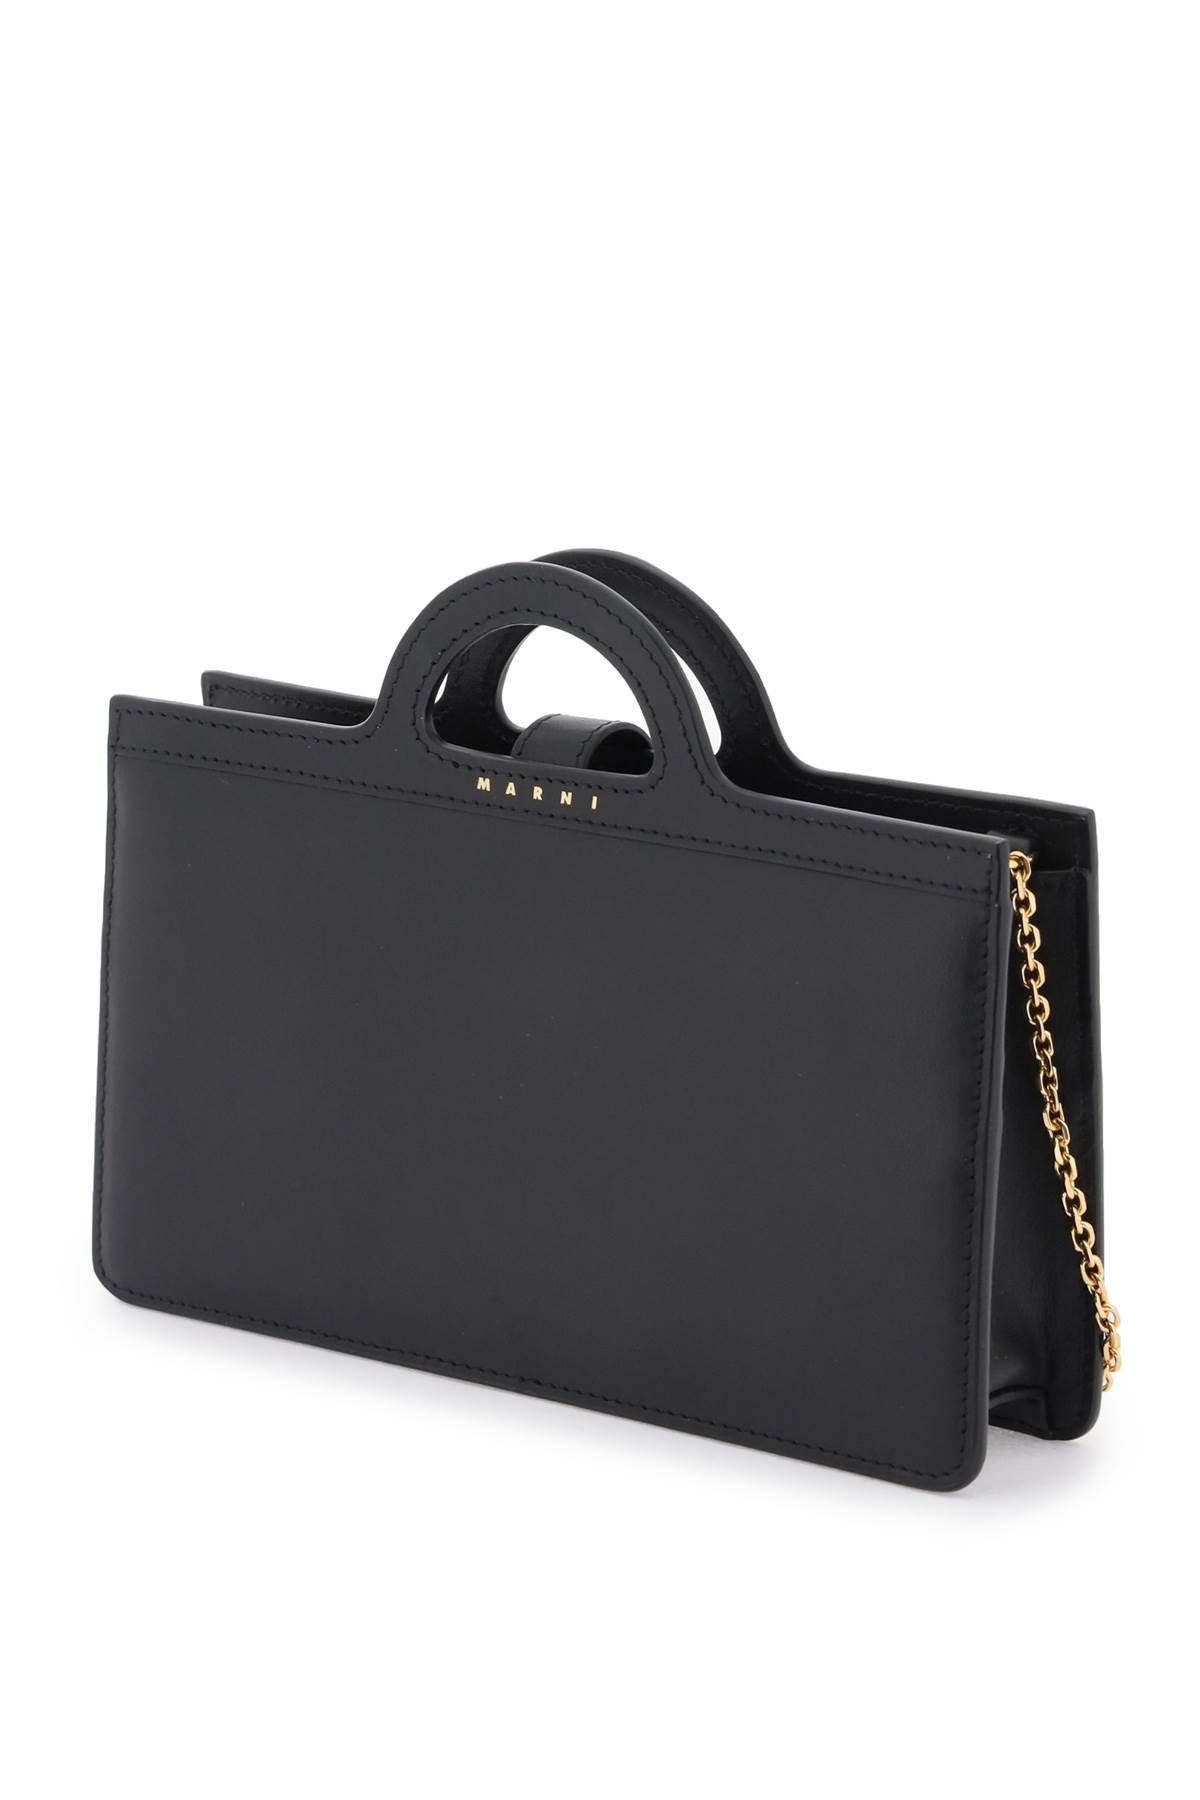 Marni Saffiano Leather Nano Trunk Bag - Realry: Your Fashion Search Engine